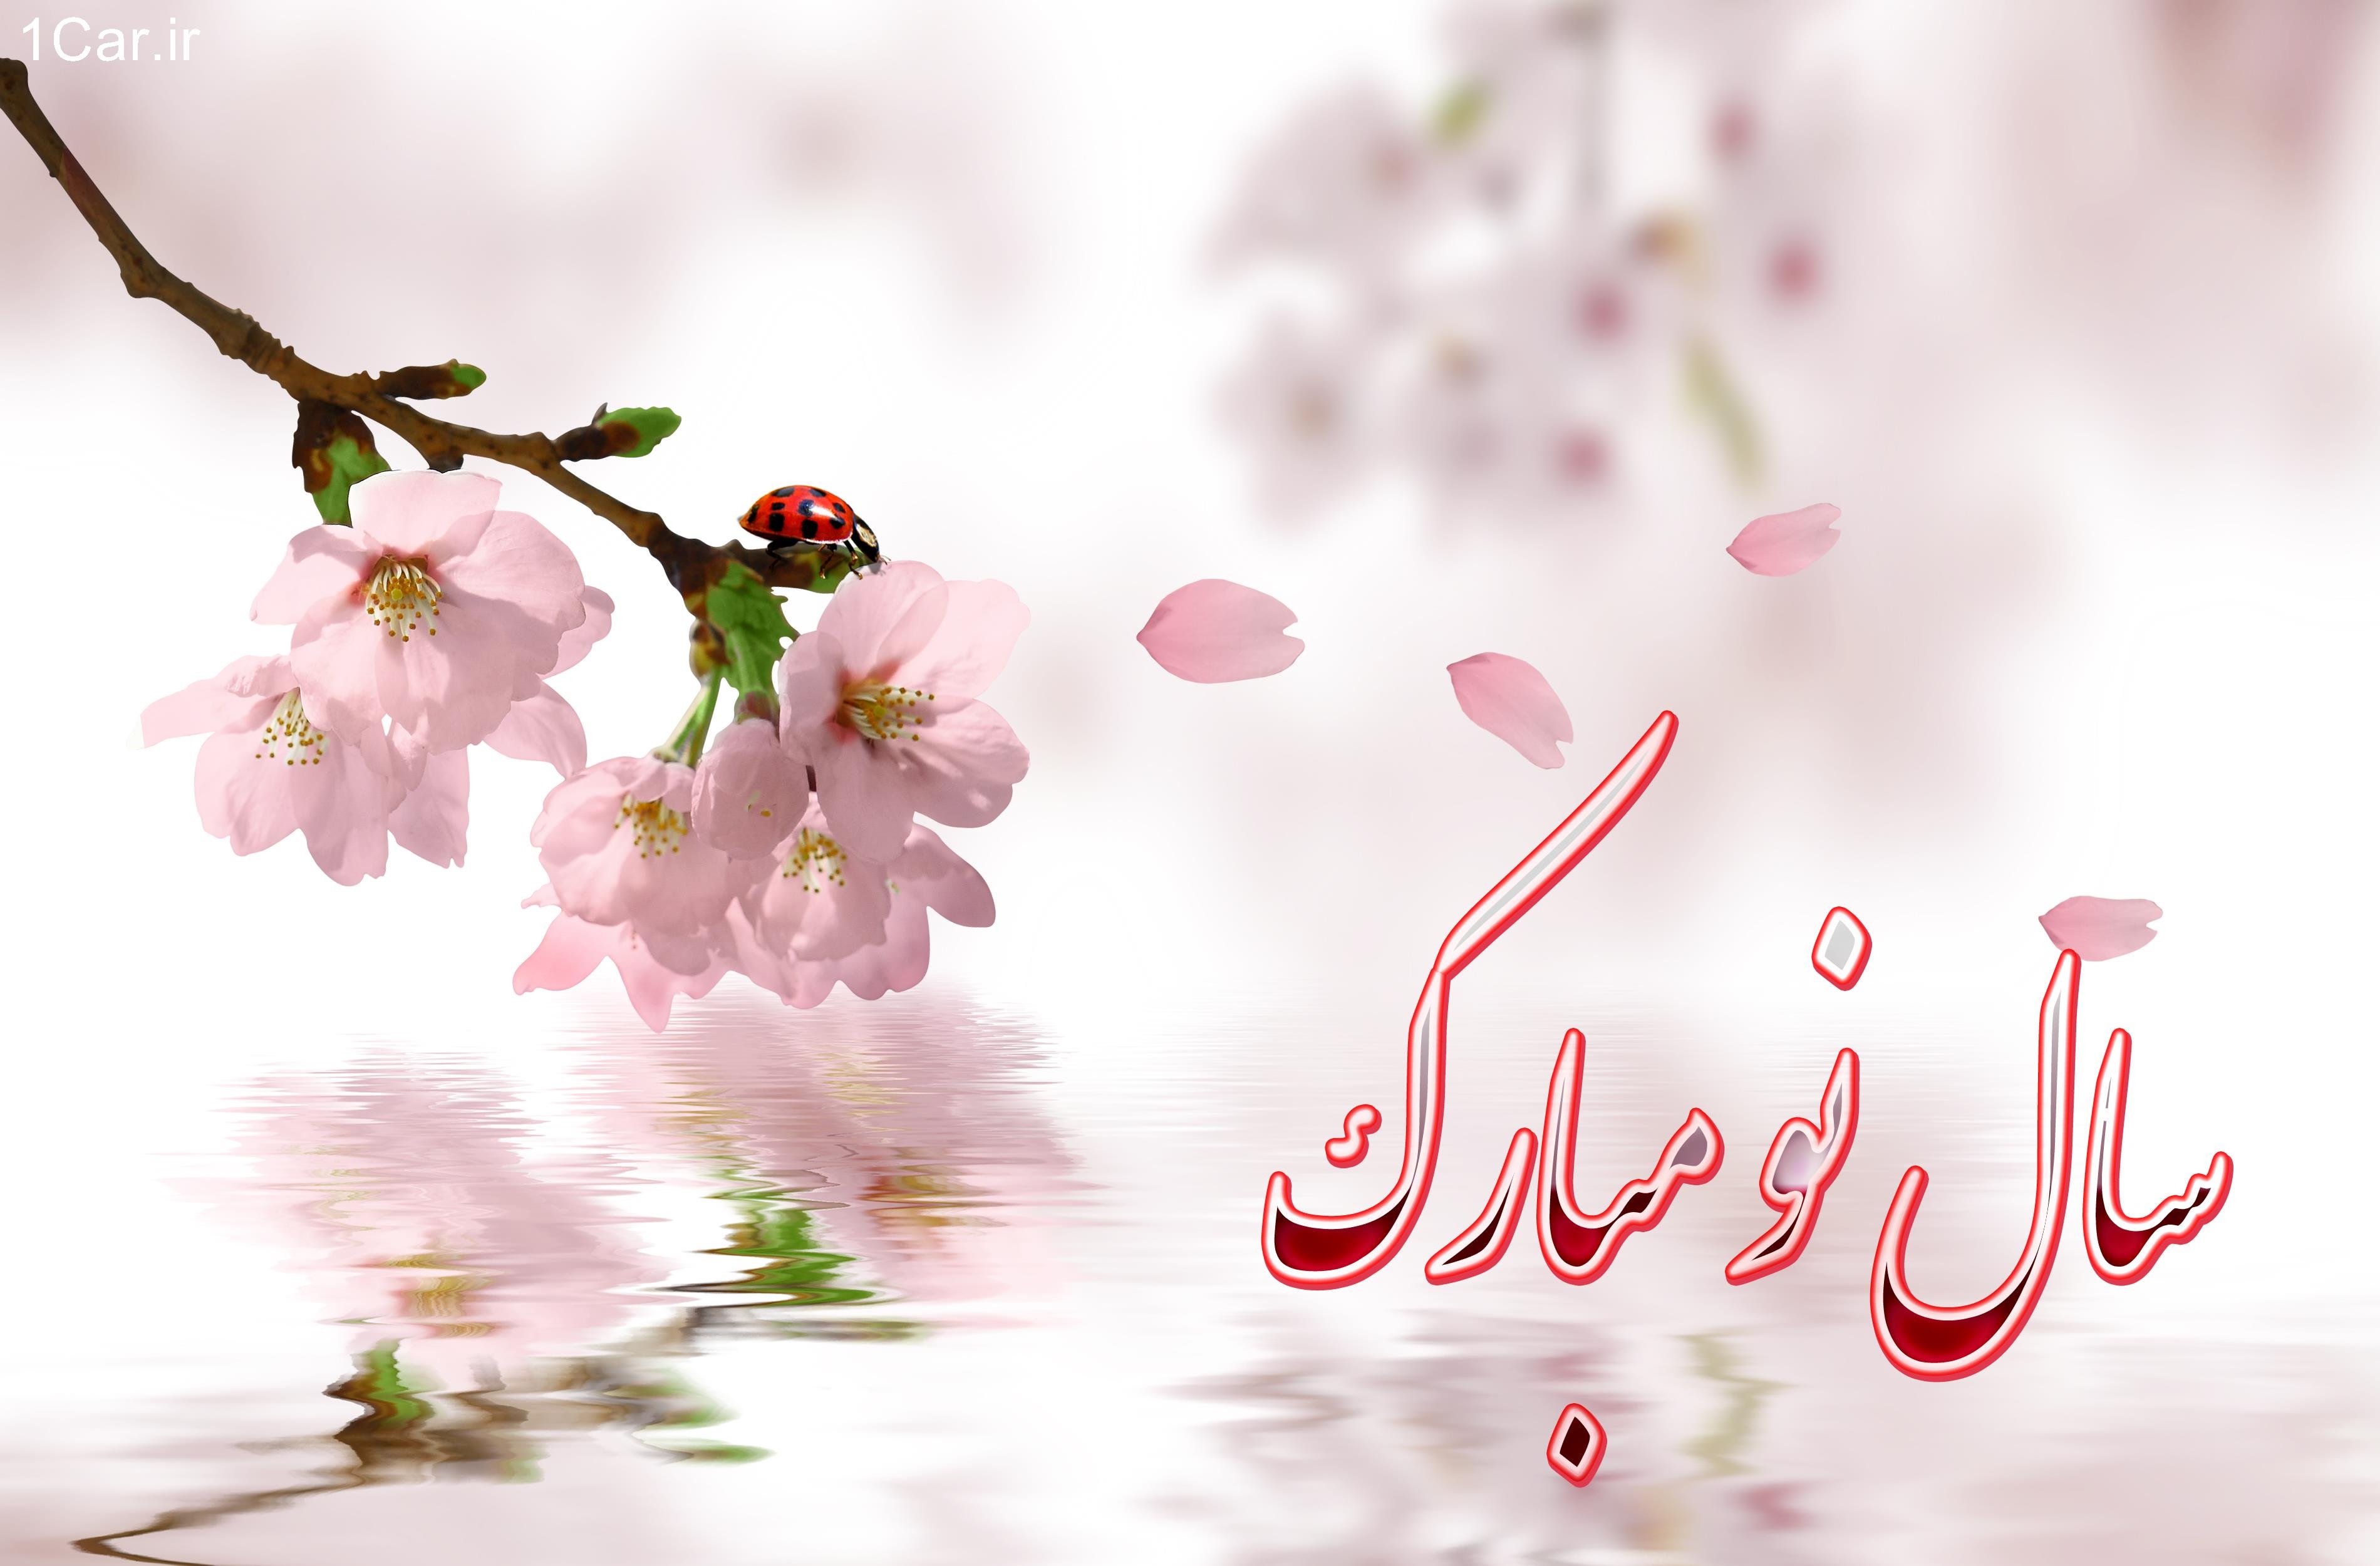 نماهنگ بهار ماندگار - به مناسبت عید نوروز